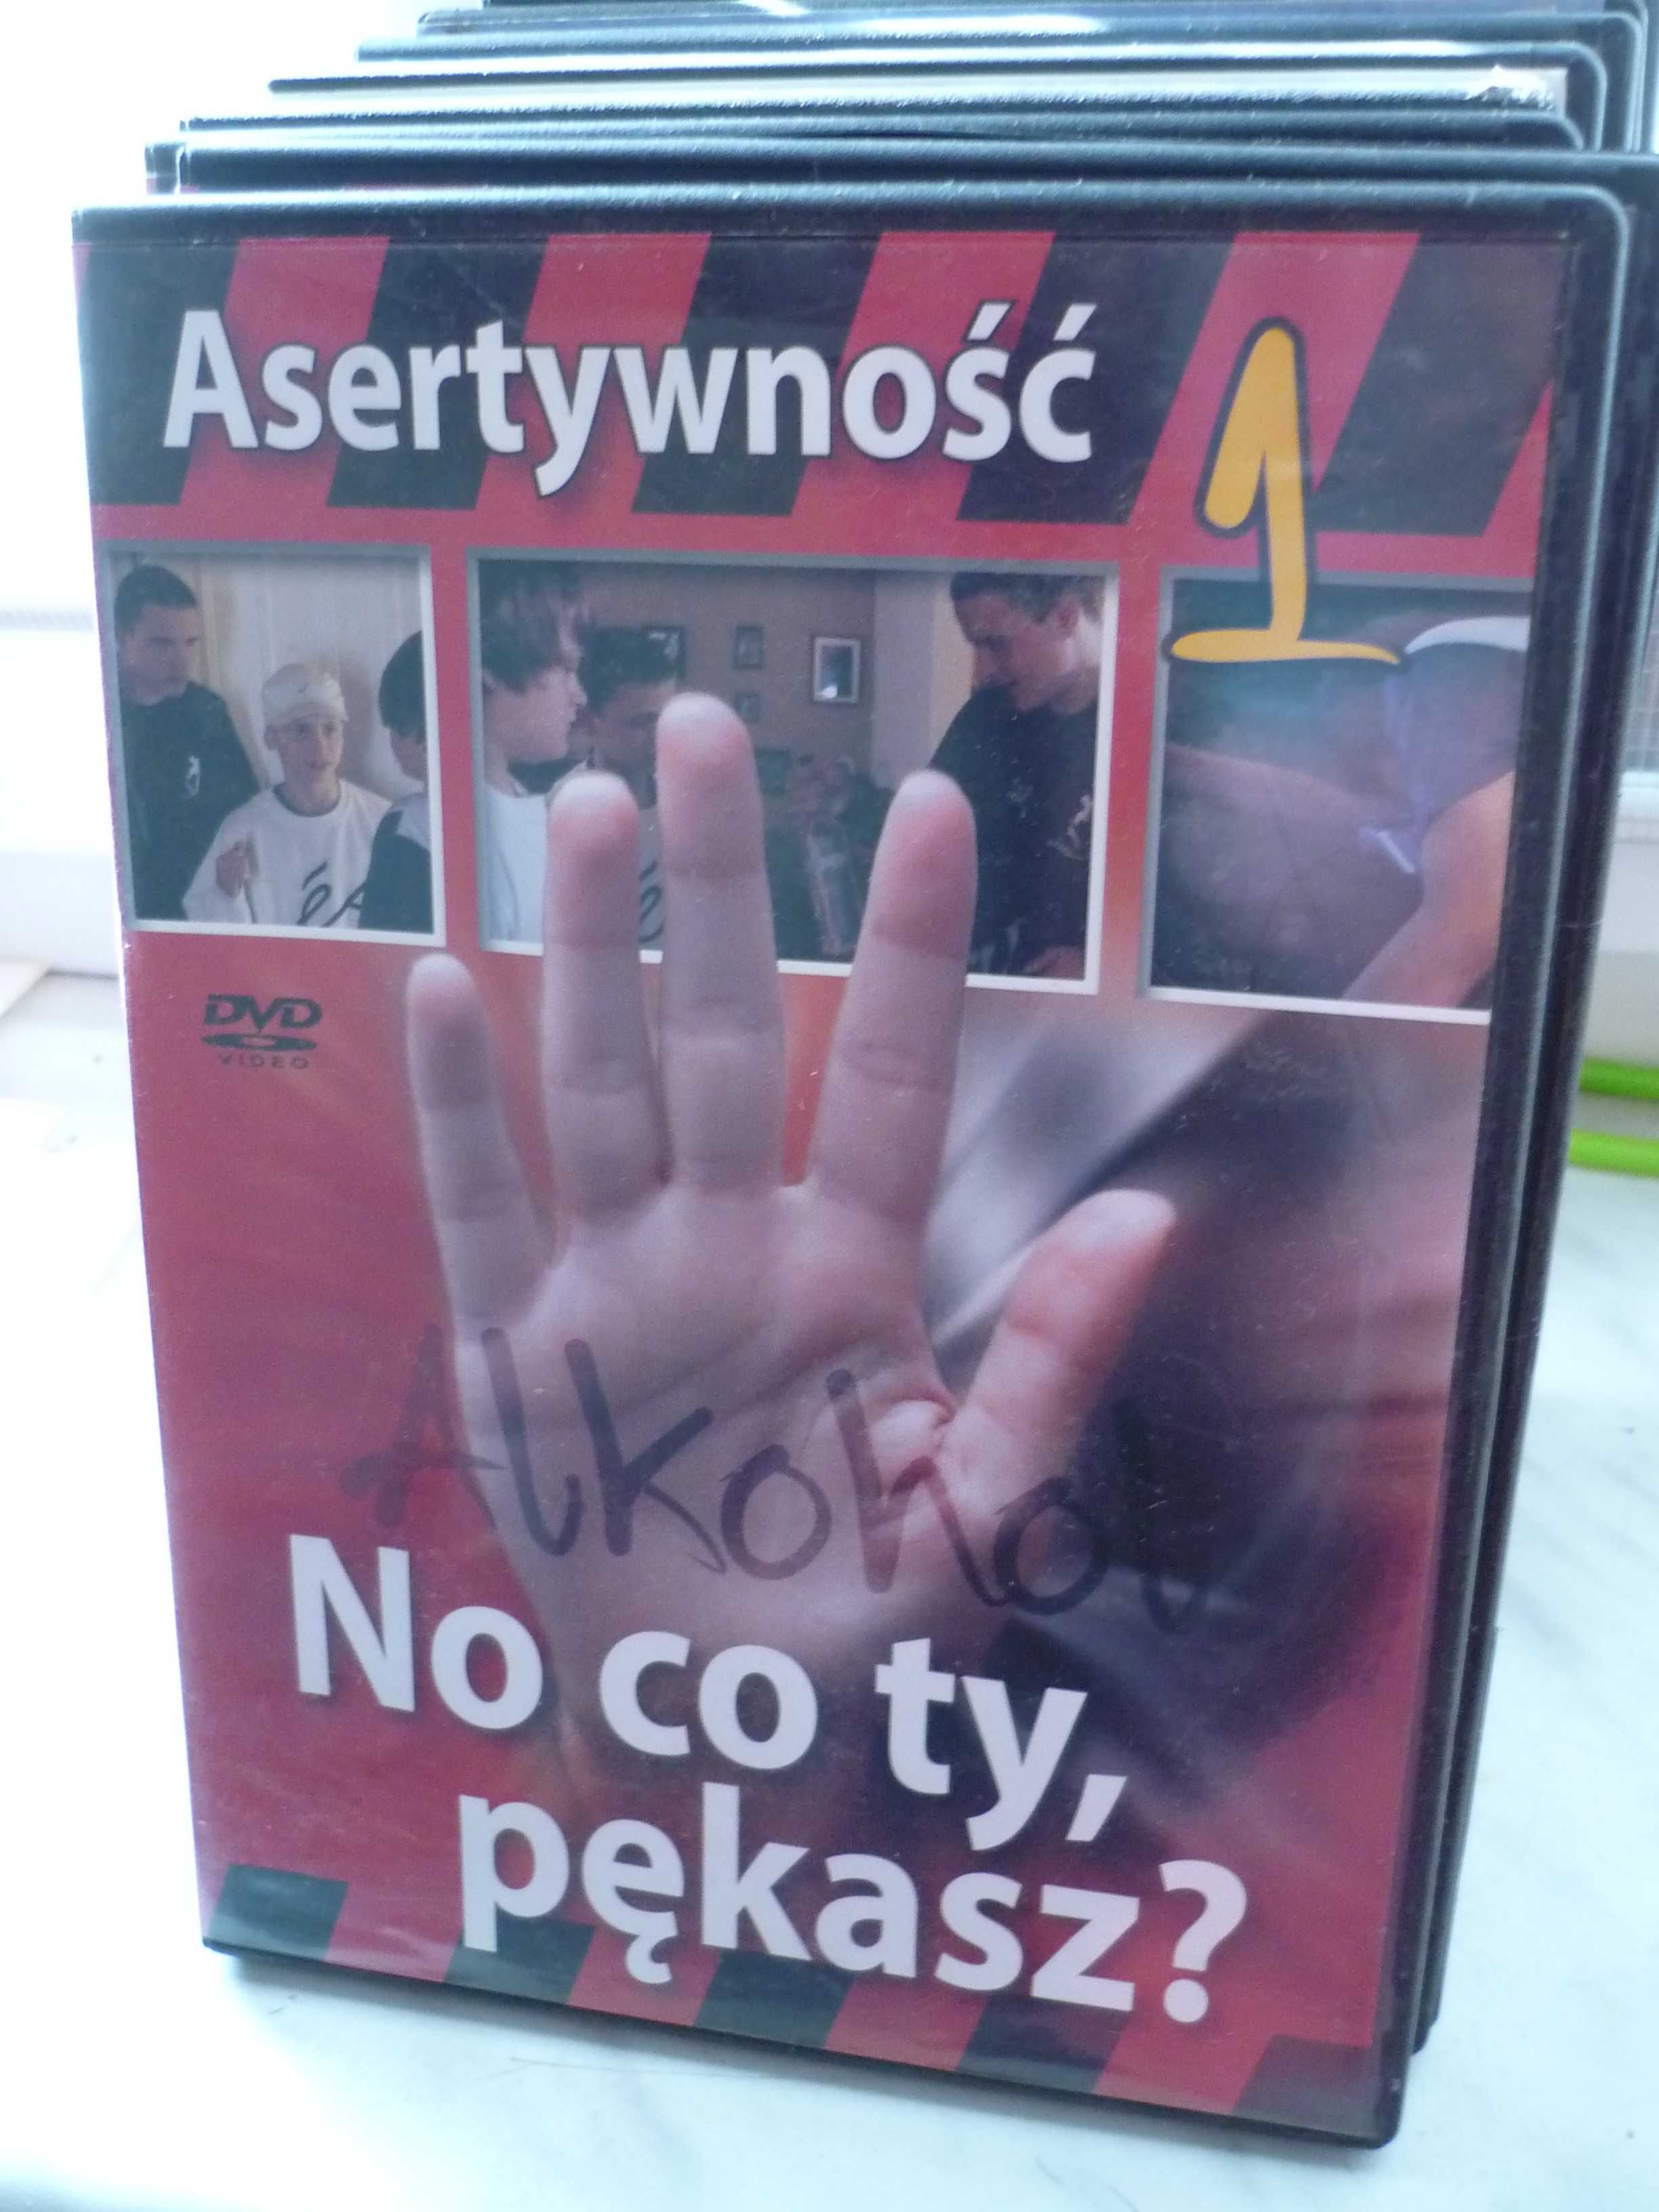 Asertywność 1 , No co ty , pękasz ? , DVD.